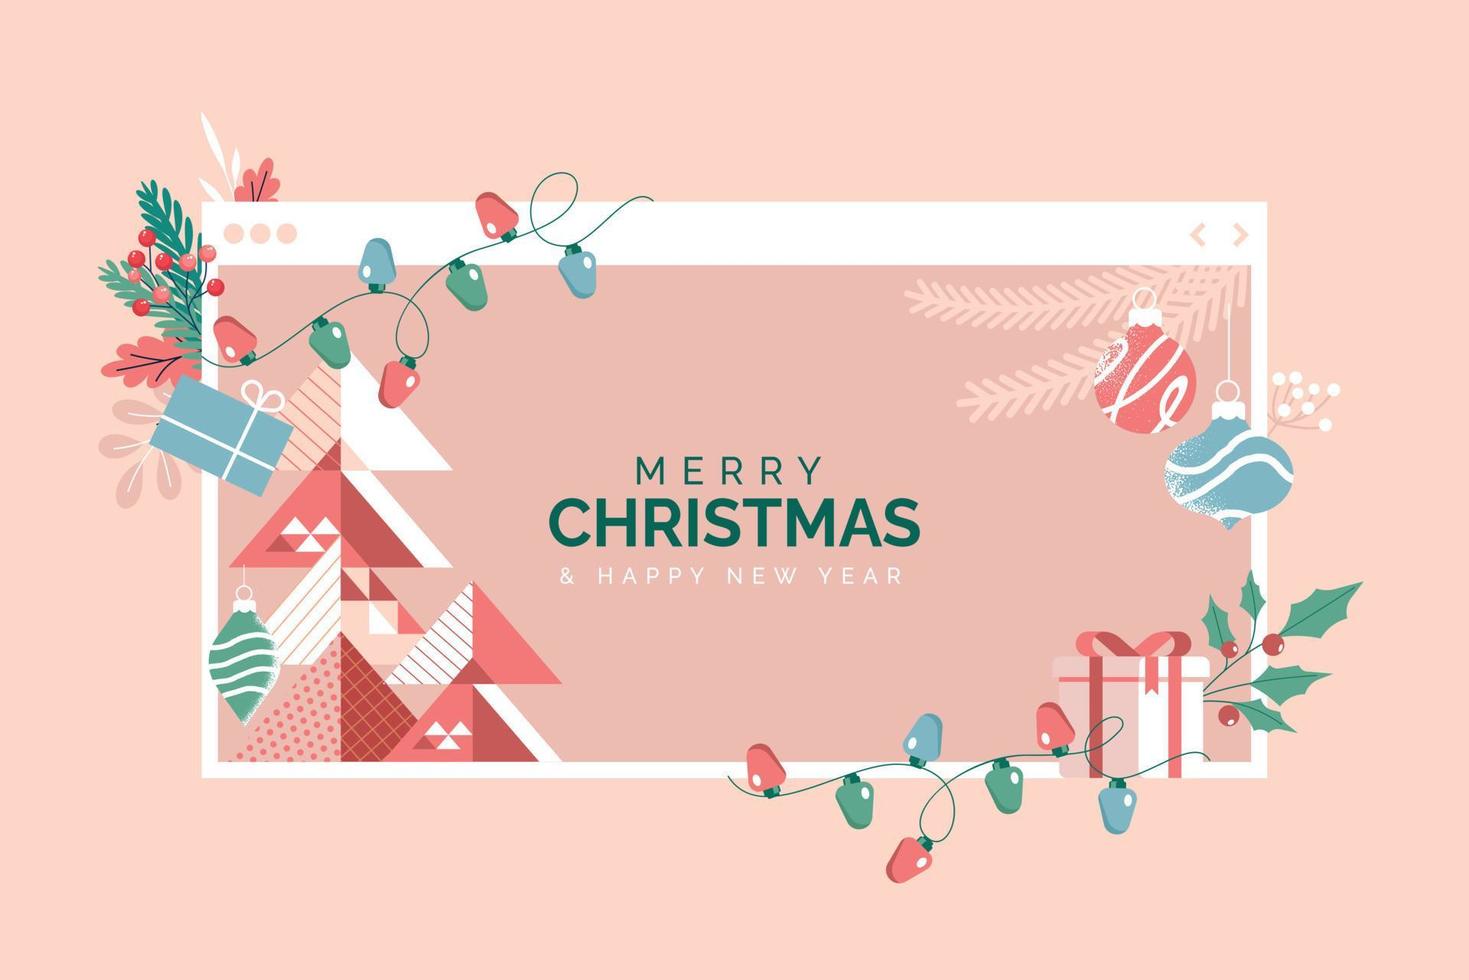 tarjeta de felicitación de navidad y año nuevo. concepto moderno de ilustración vectorial para tarjetas de felicitación, sitio web y banner de sitio web móvil, tarjeta de invitación de fiesta, afiches, banners de medios sociales. vector